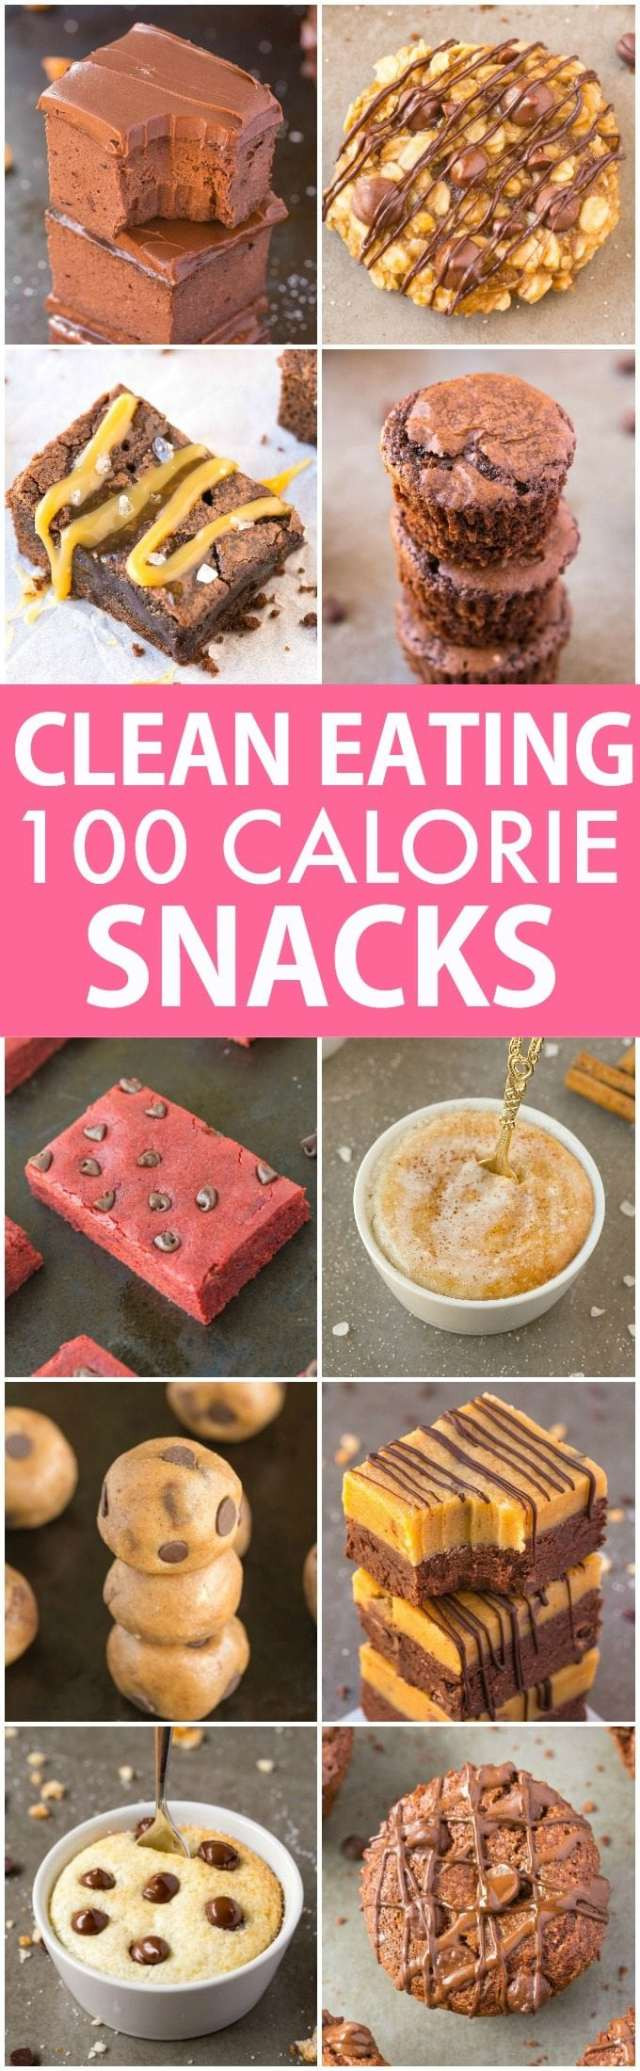 Healthy Clean Snacks
 10 Clean Eating Healthy Sweet Snacks Under 100 Calories